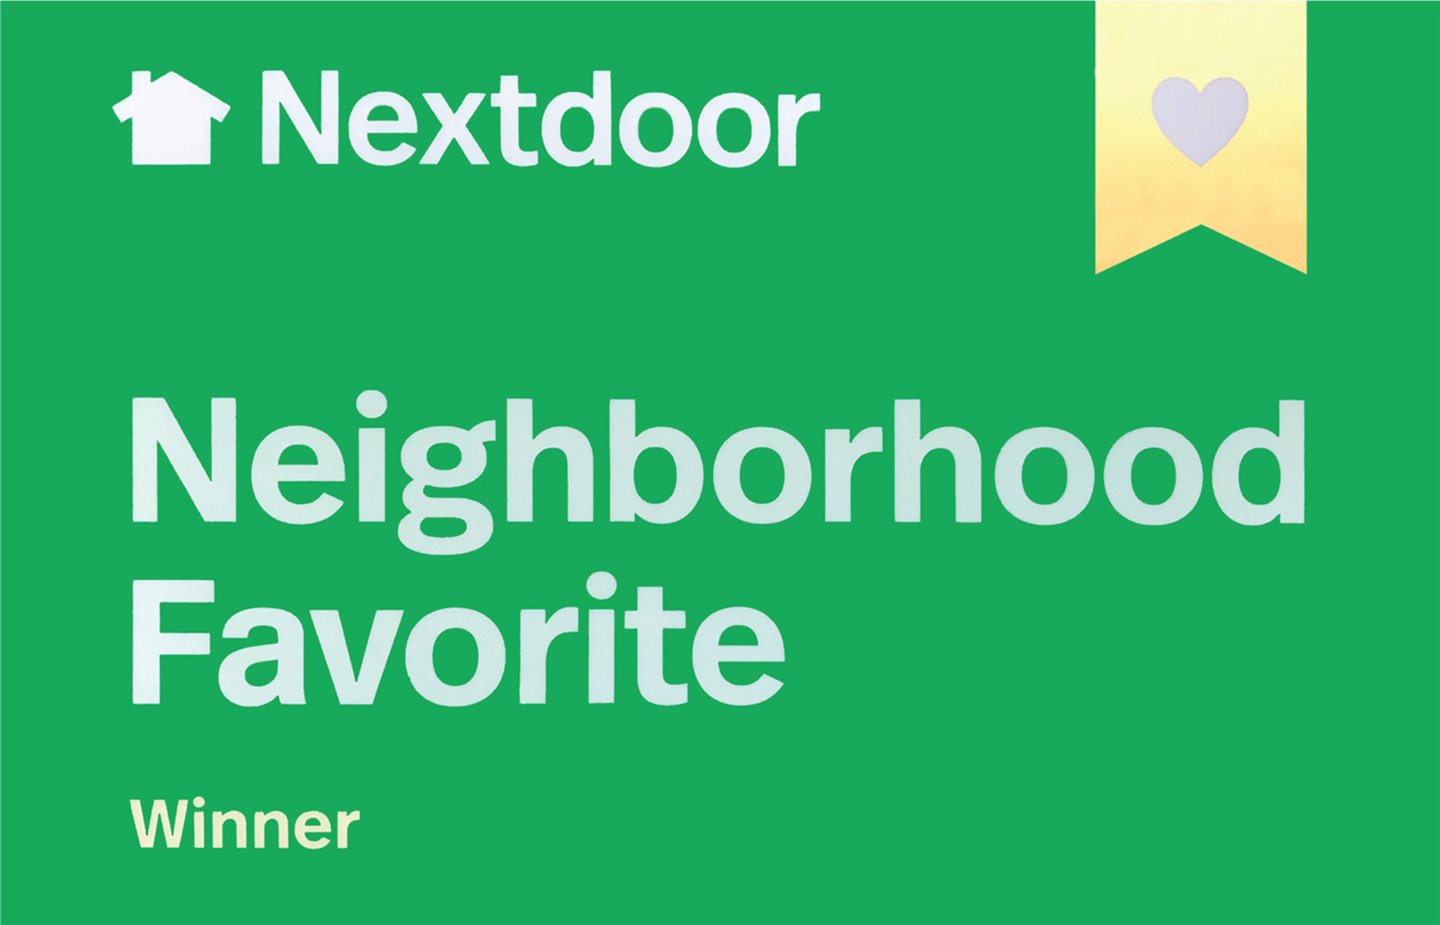 nextdoor neighborhood favorite award winner excellent roofing memphis